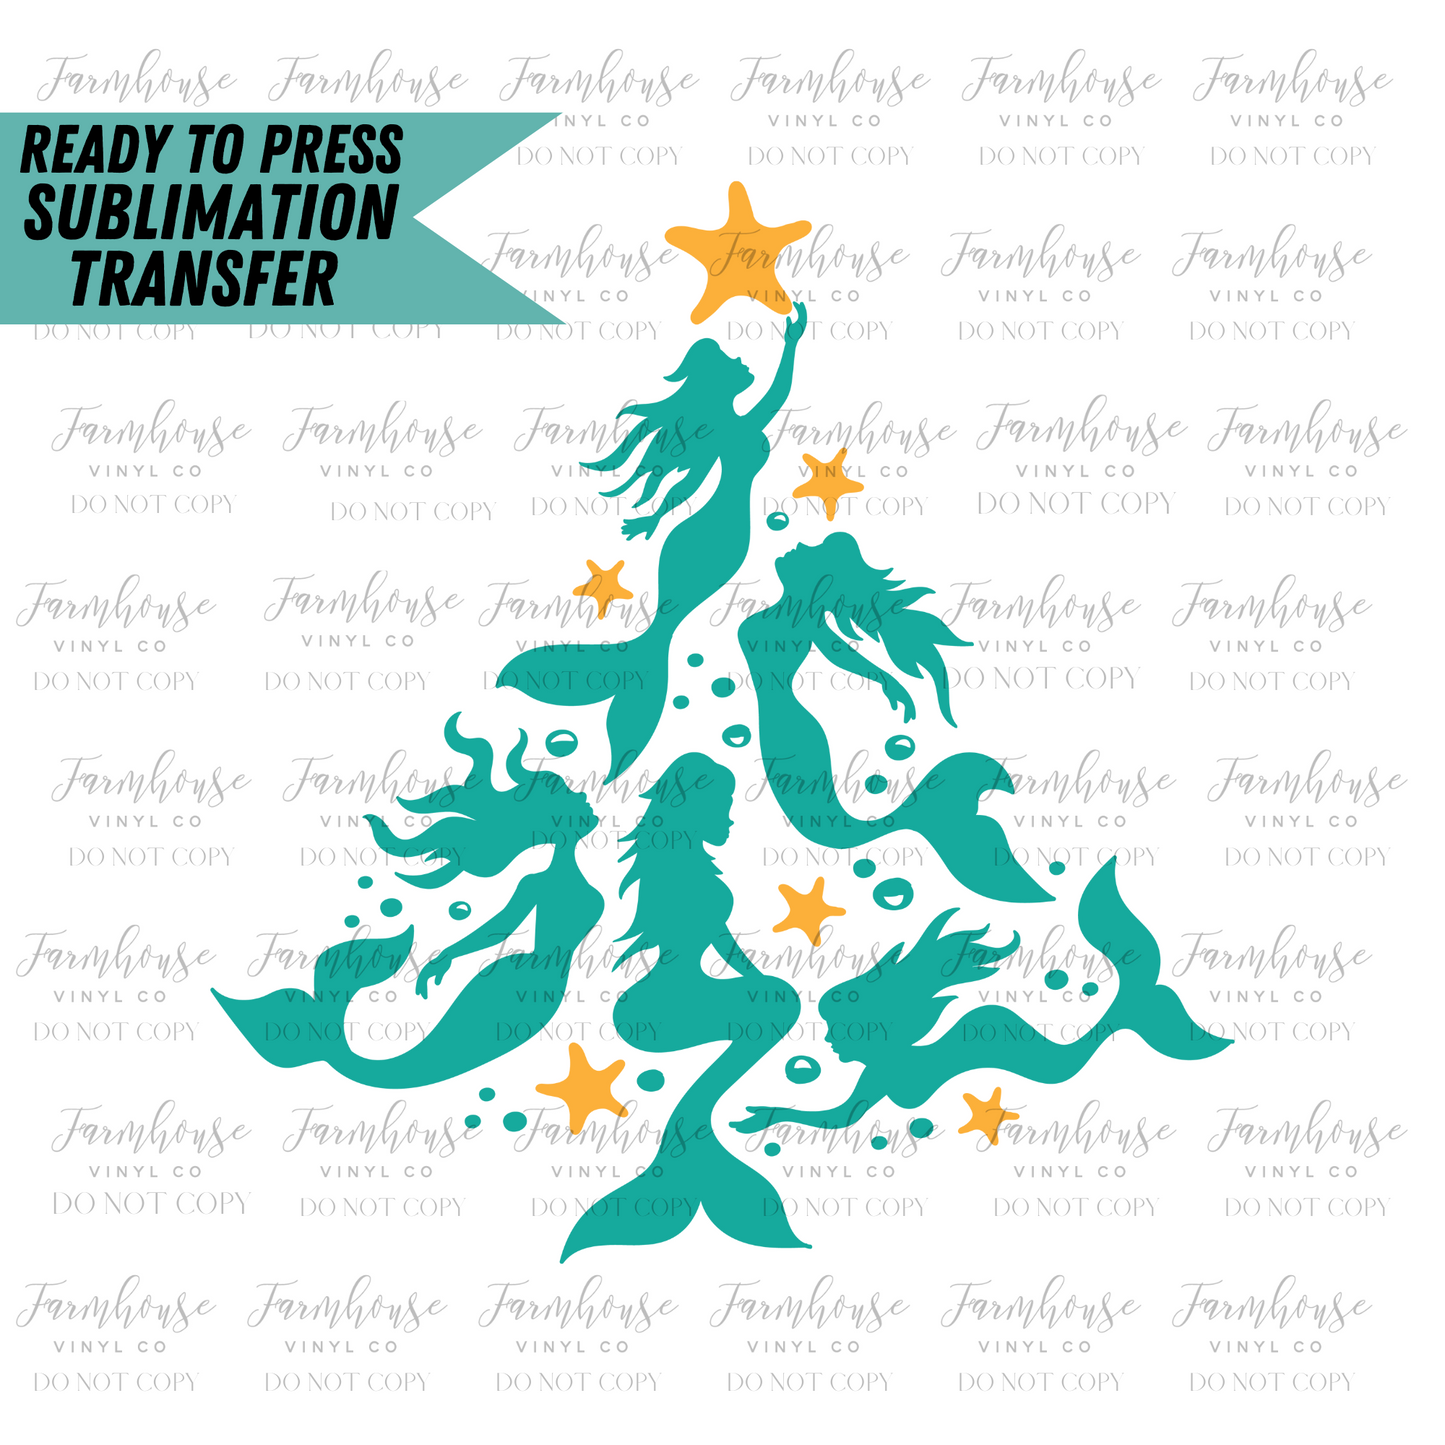 Mermaid Christmas Tree Ready To Press Sublimation Transfer - Farmhouse Vinyl Co